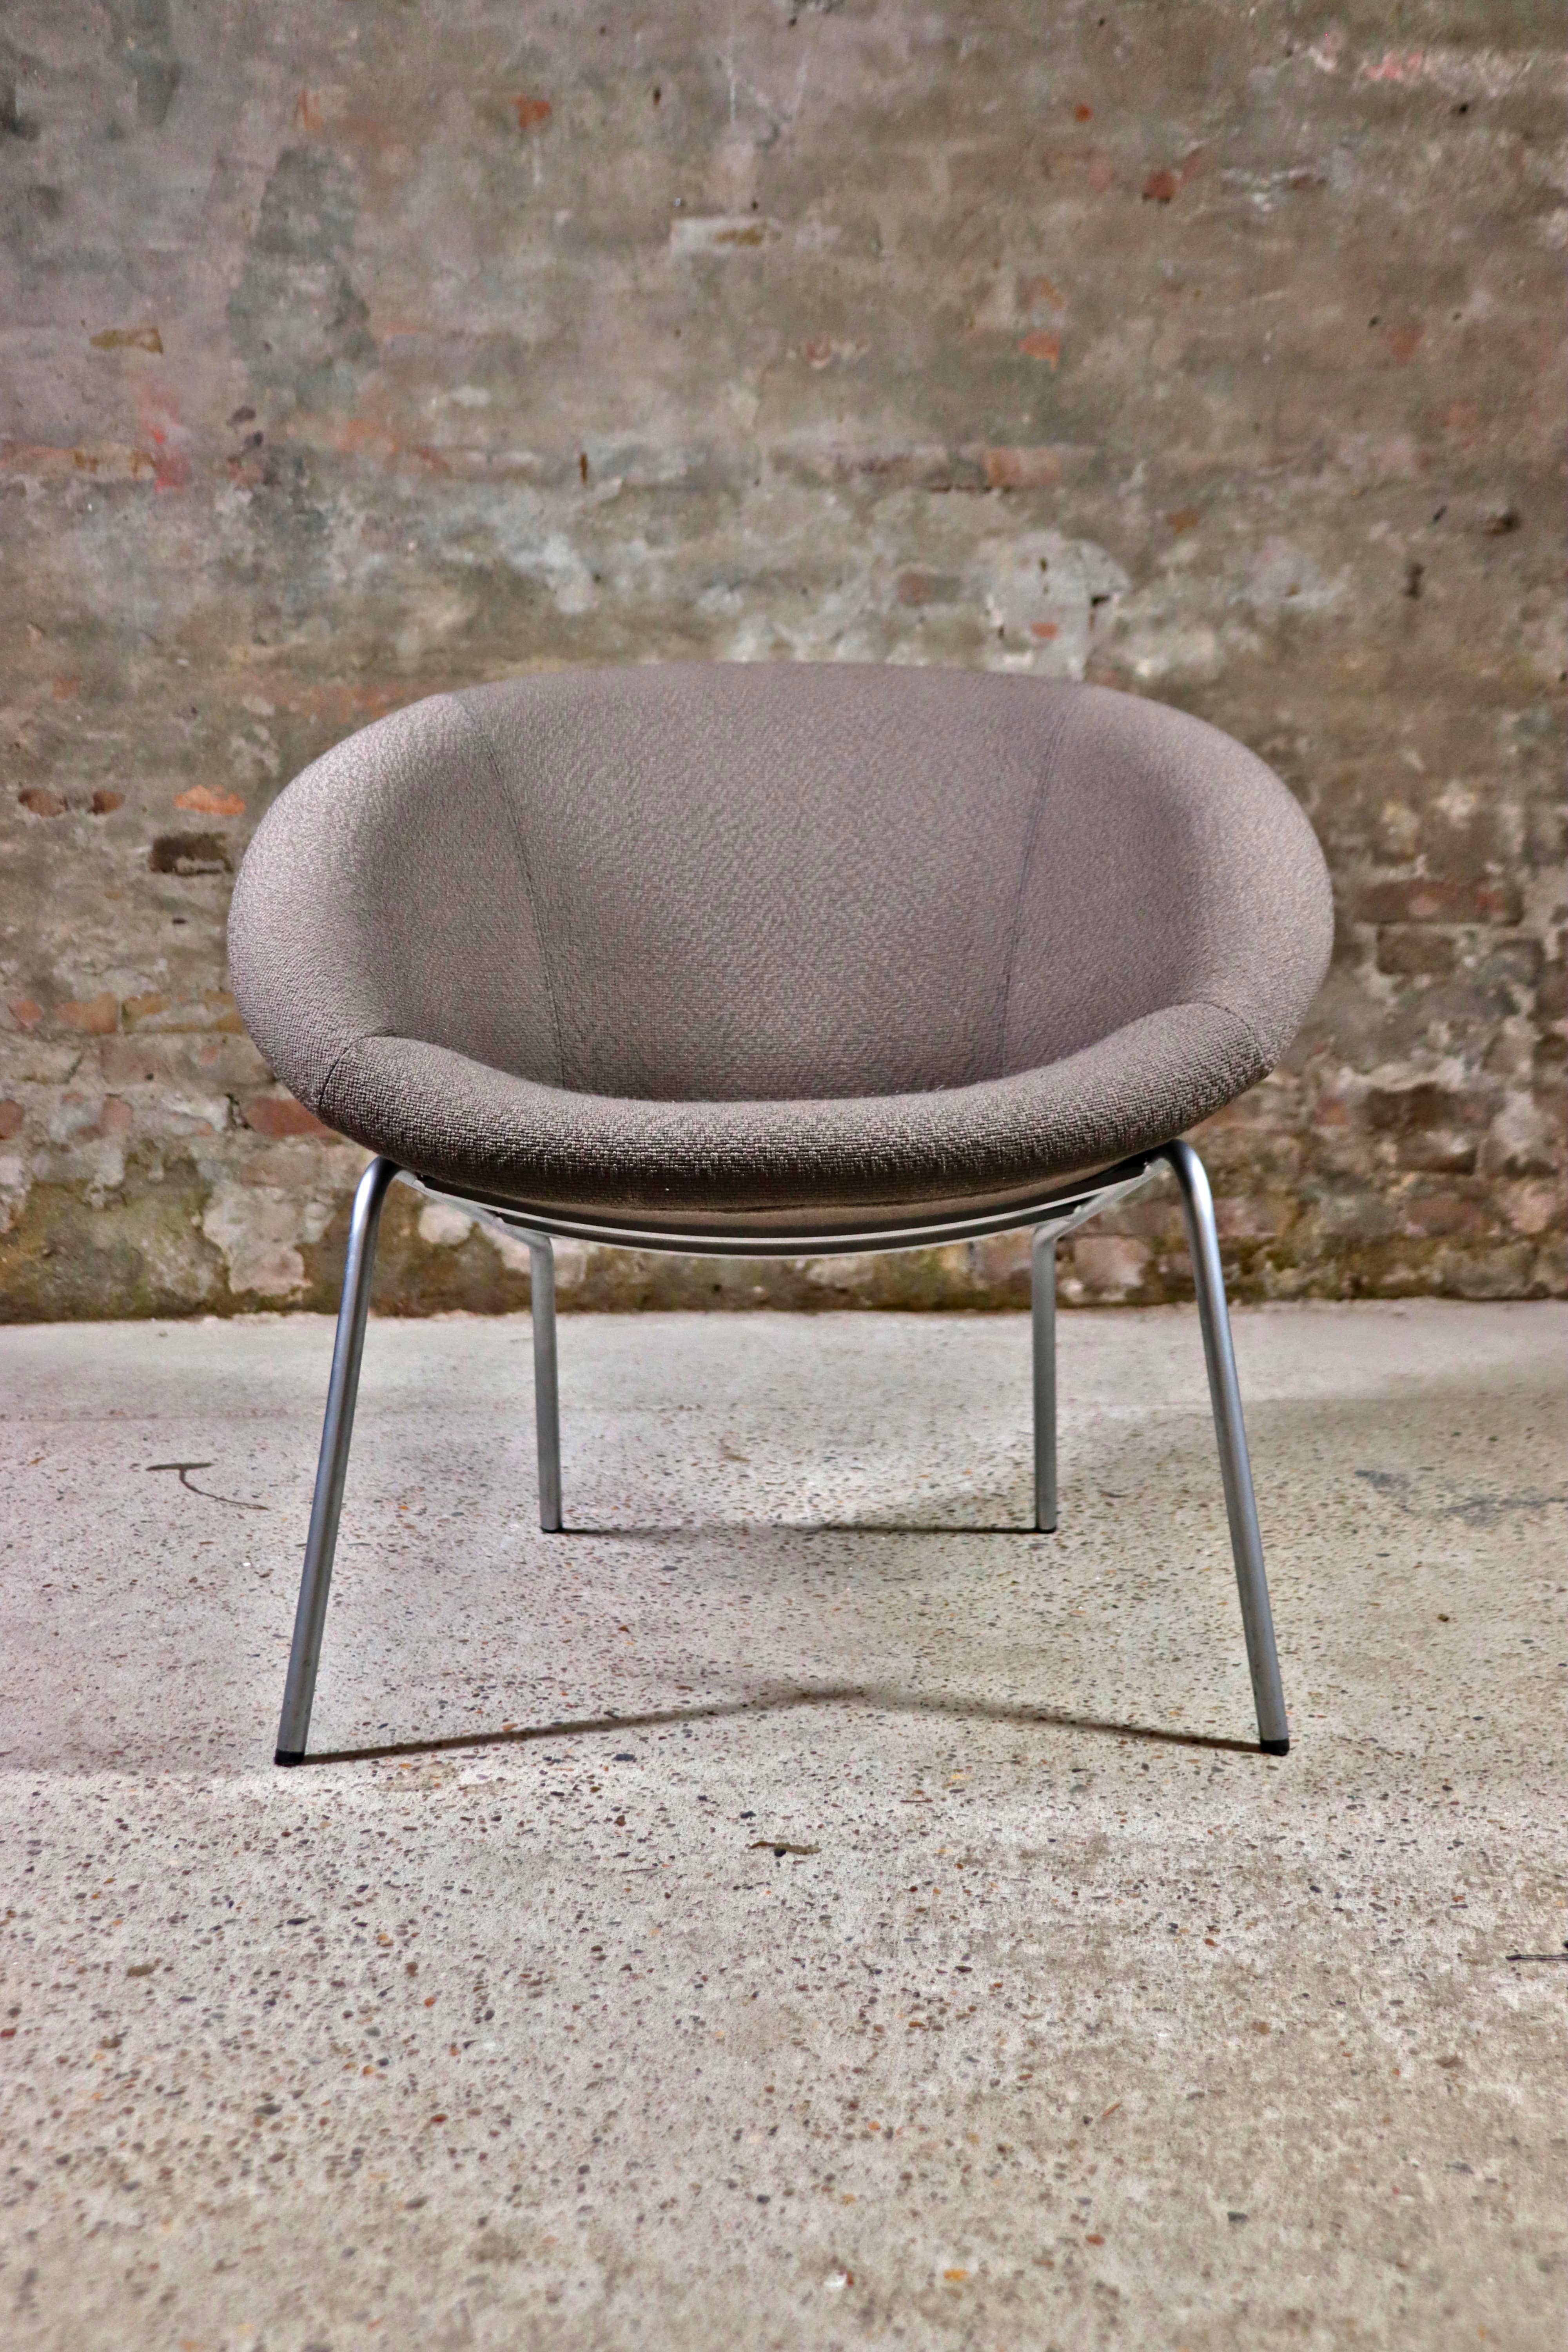 Der Walter Knoll 369 Sessel wurde 1956 vom Walter Knoll Team entworfen. Zu dieser Zeit bestand der Großteil der deutschen Möbelindustrie aus klassischen, massiven Möbeln mit einem schlichten Design. Doch Walter Knoll läutete mit diesem weichen,